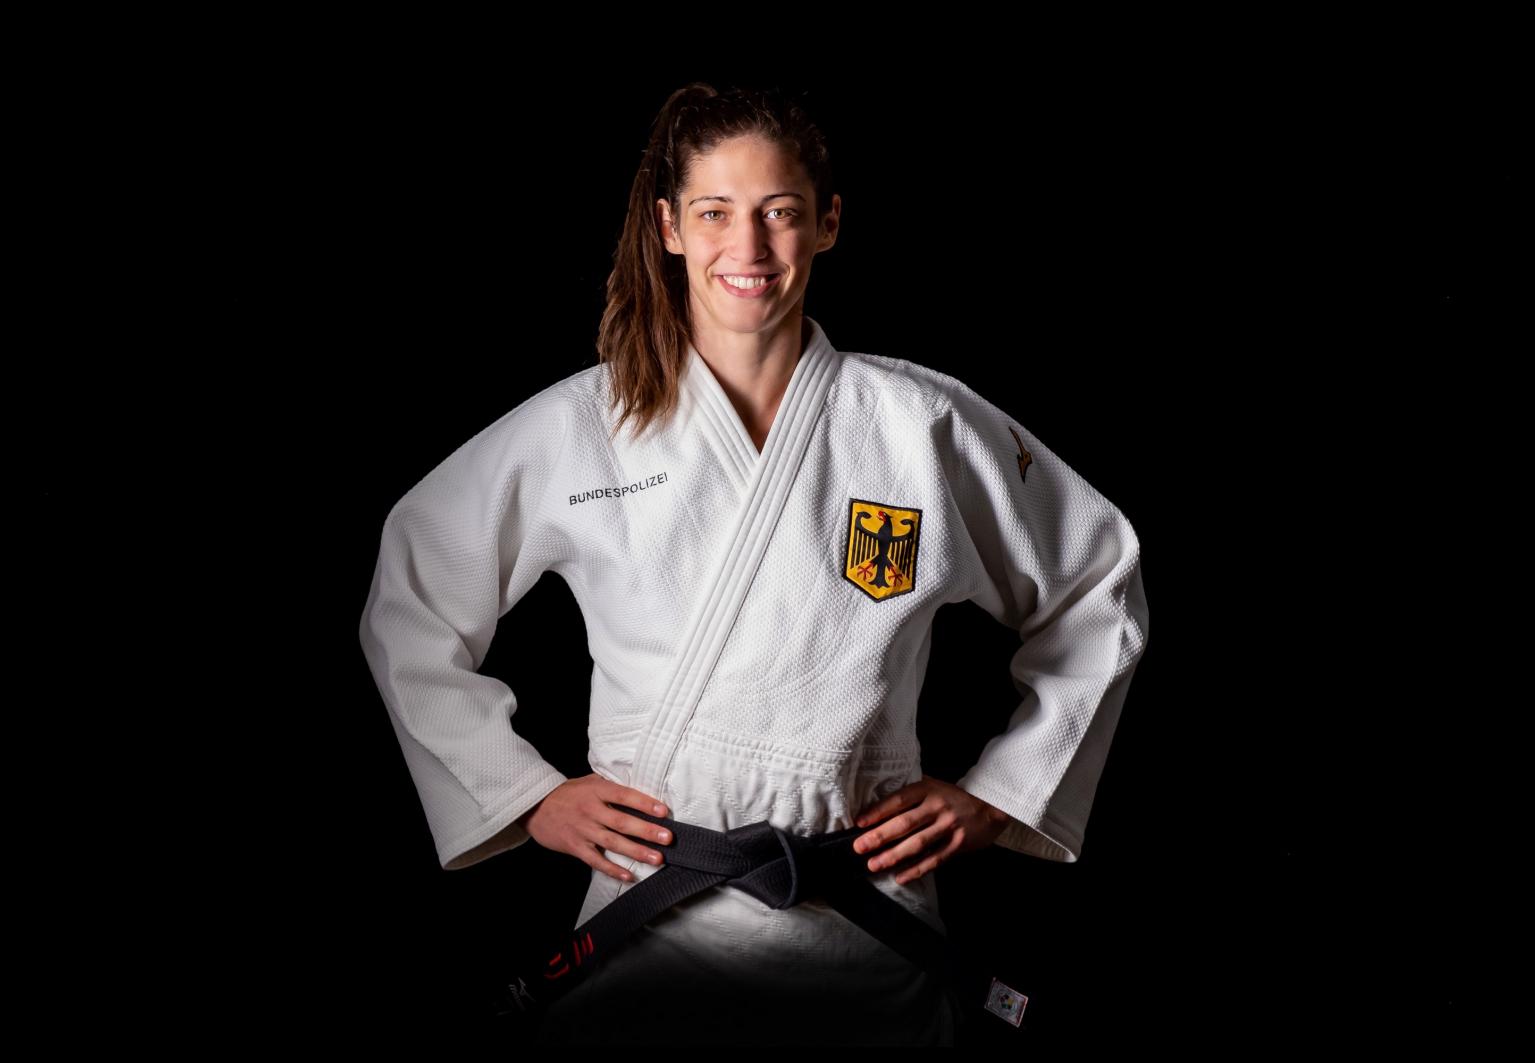 Die Judoka Miriam Butkereit, die aktuell den fünften Platz der Judo-Weltrangliste in der Gewichtsklasse bis 70 Kilogramm anführt, ist zum SV Halle gewechselt.Foto: SV Halle/(Deutsch